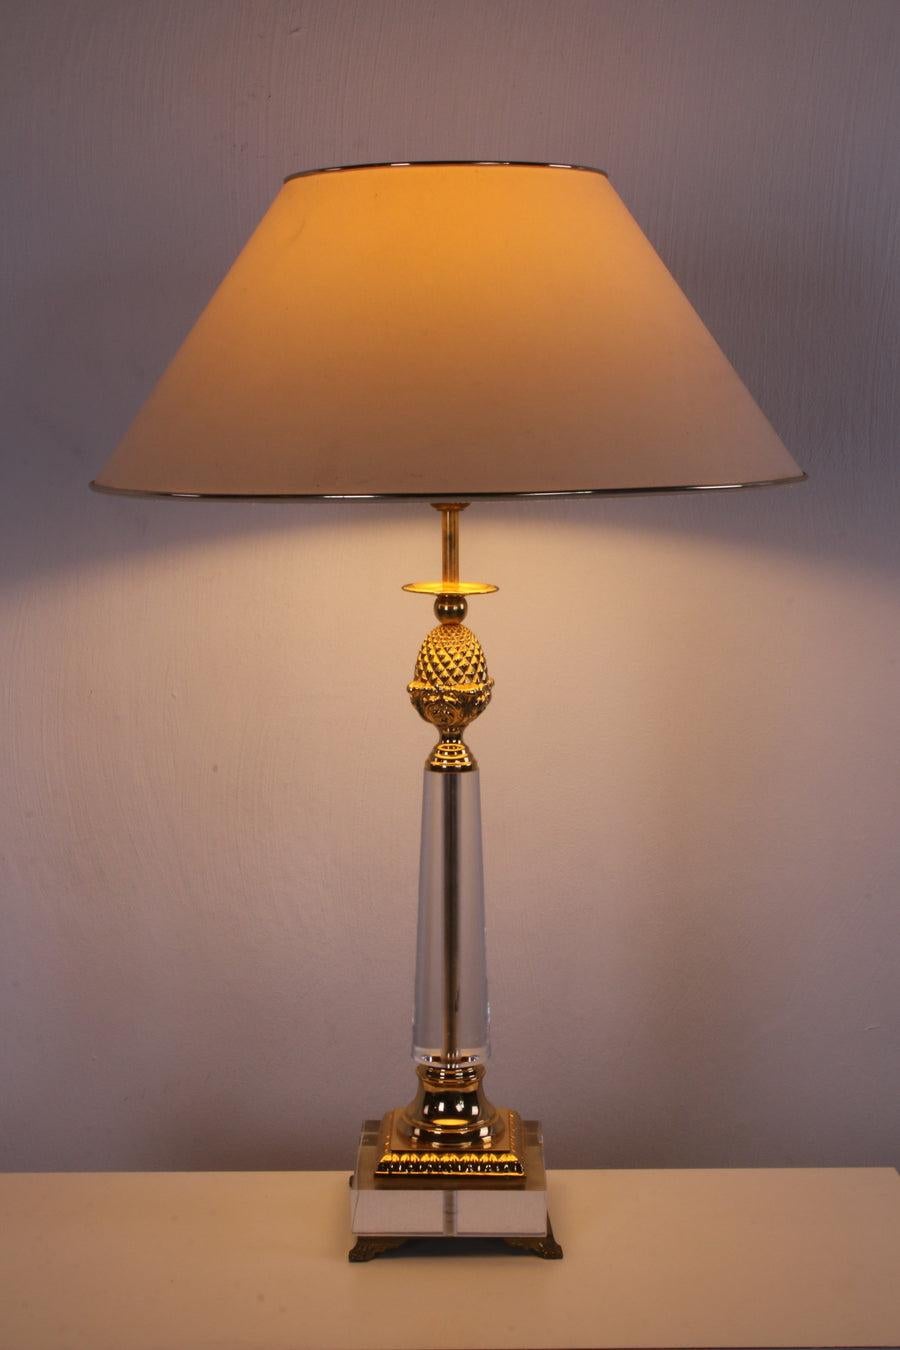 Plexiglas Tischlampe mit goldenen Elementen Hollywood Regency Stil

Dies ist eine Tischlampe im Hollywood-Regency-Stil, sie hat auch eine Ananas und der Sockel ist aus Plexiglas.
Ein schönes Exemplar mit Kapuze, die Verkabelung ist auch in